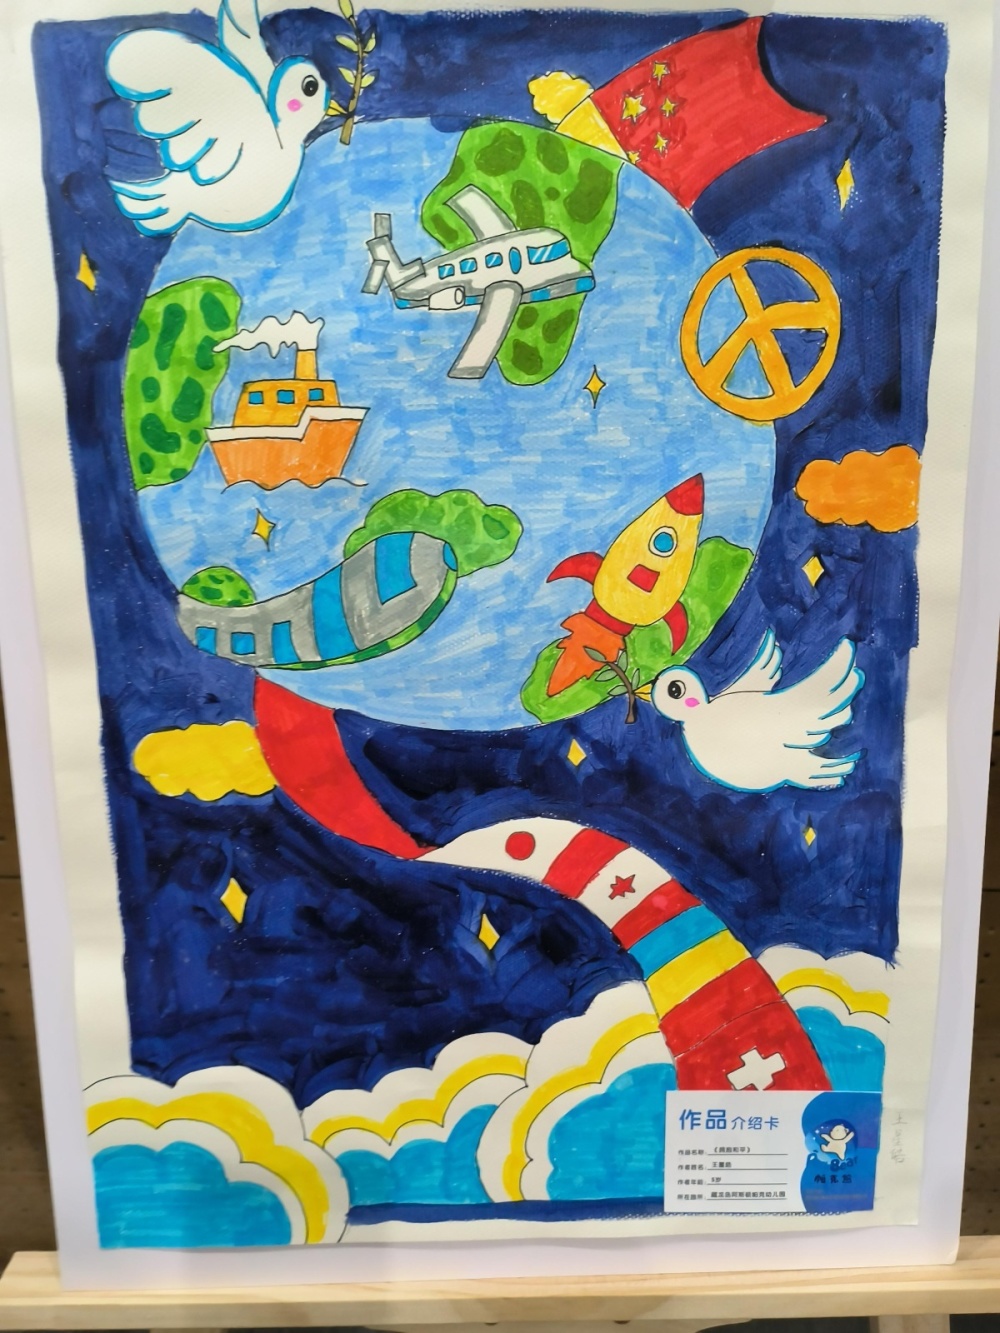 世界儿童画和平美术作品展在武汉开幕